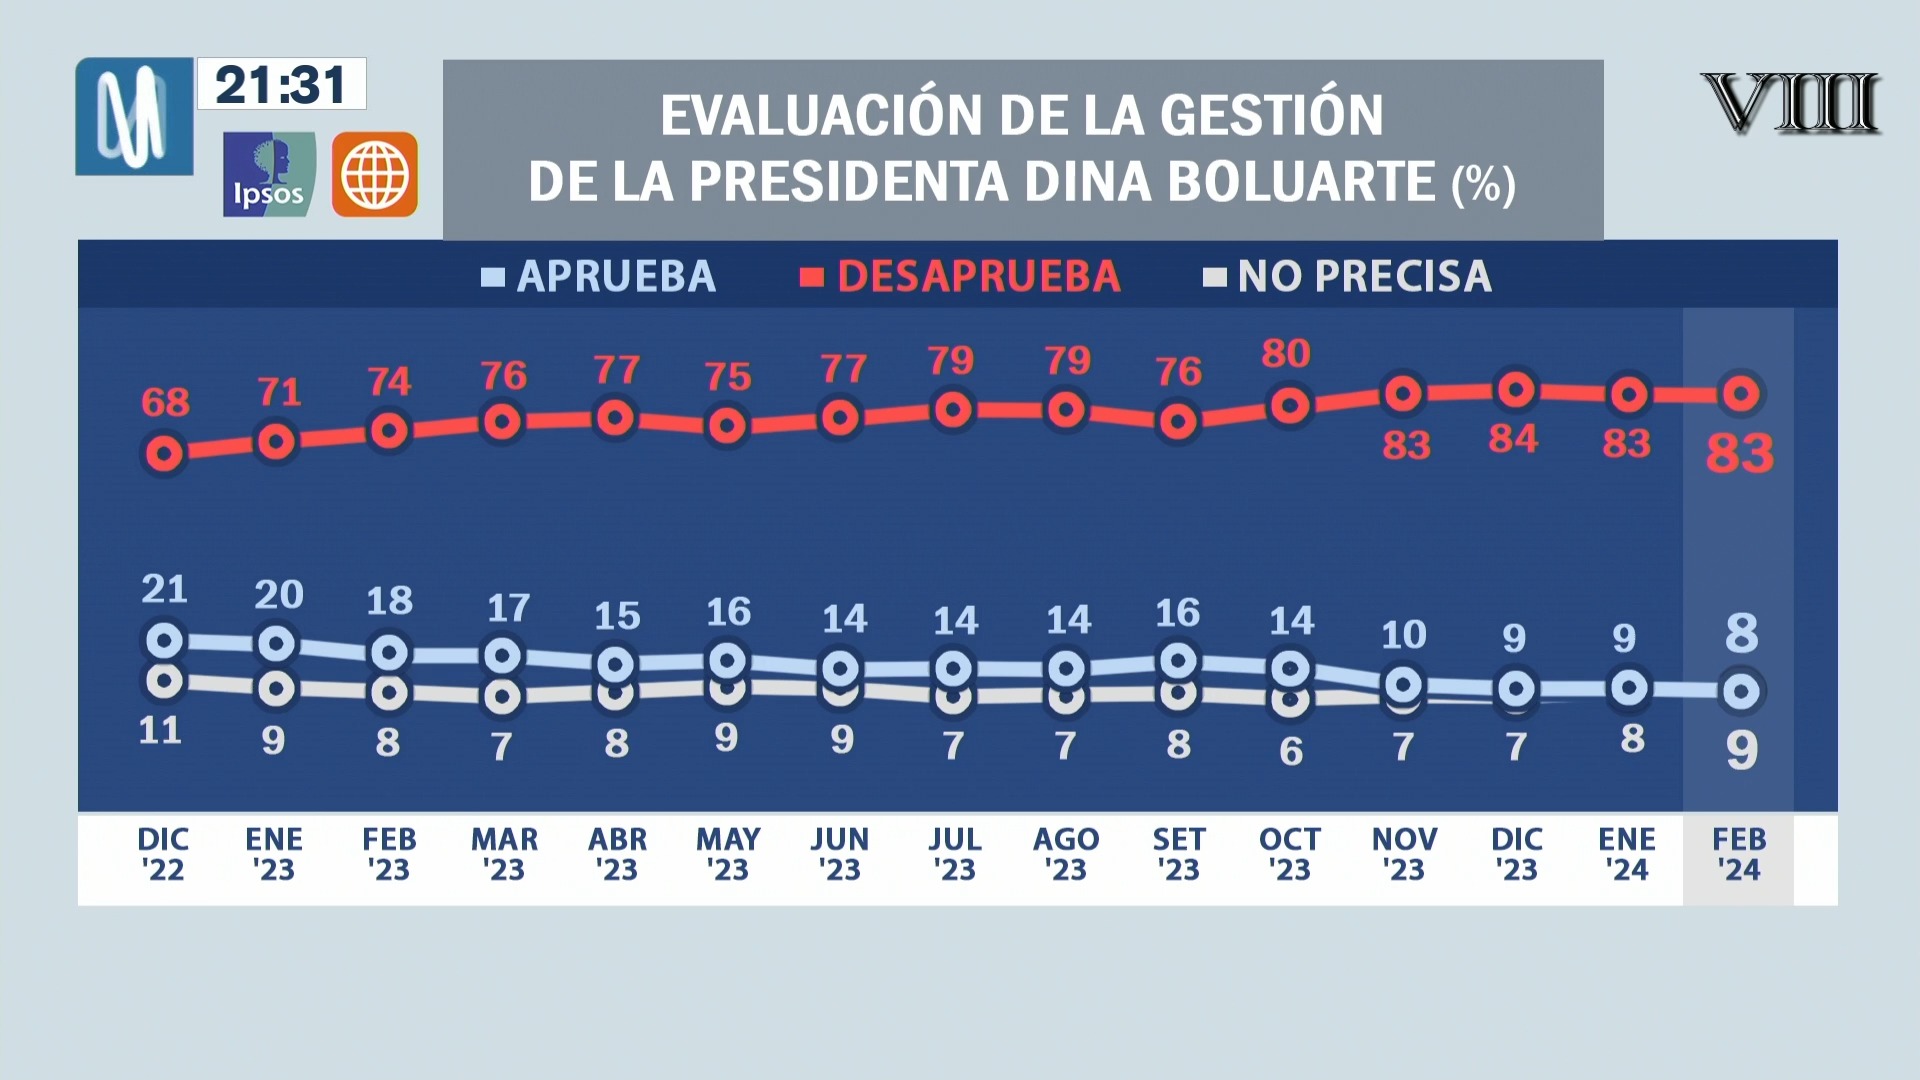 Ipsos-América: Presidenta Dina Boluarte mantiene 83% de desaprobación en febrero